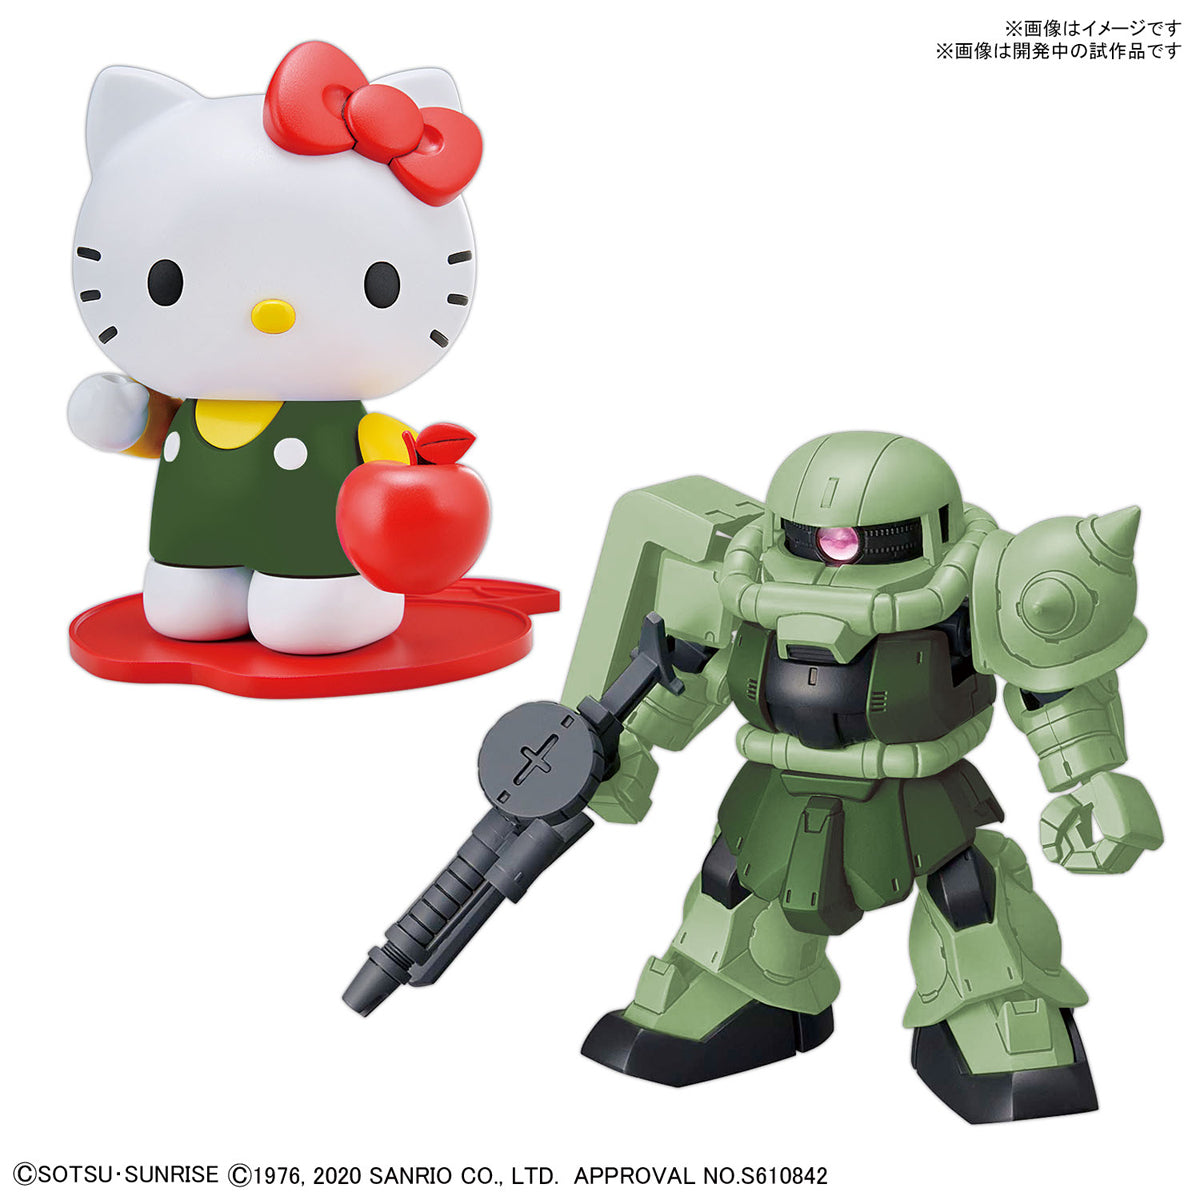 SDCS Hello Kitty Zaku II